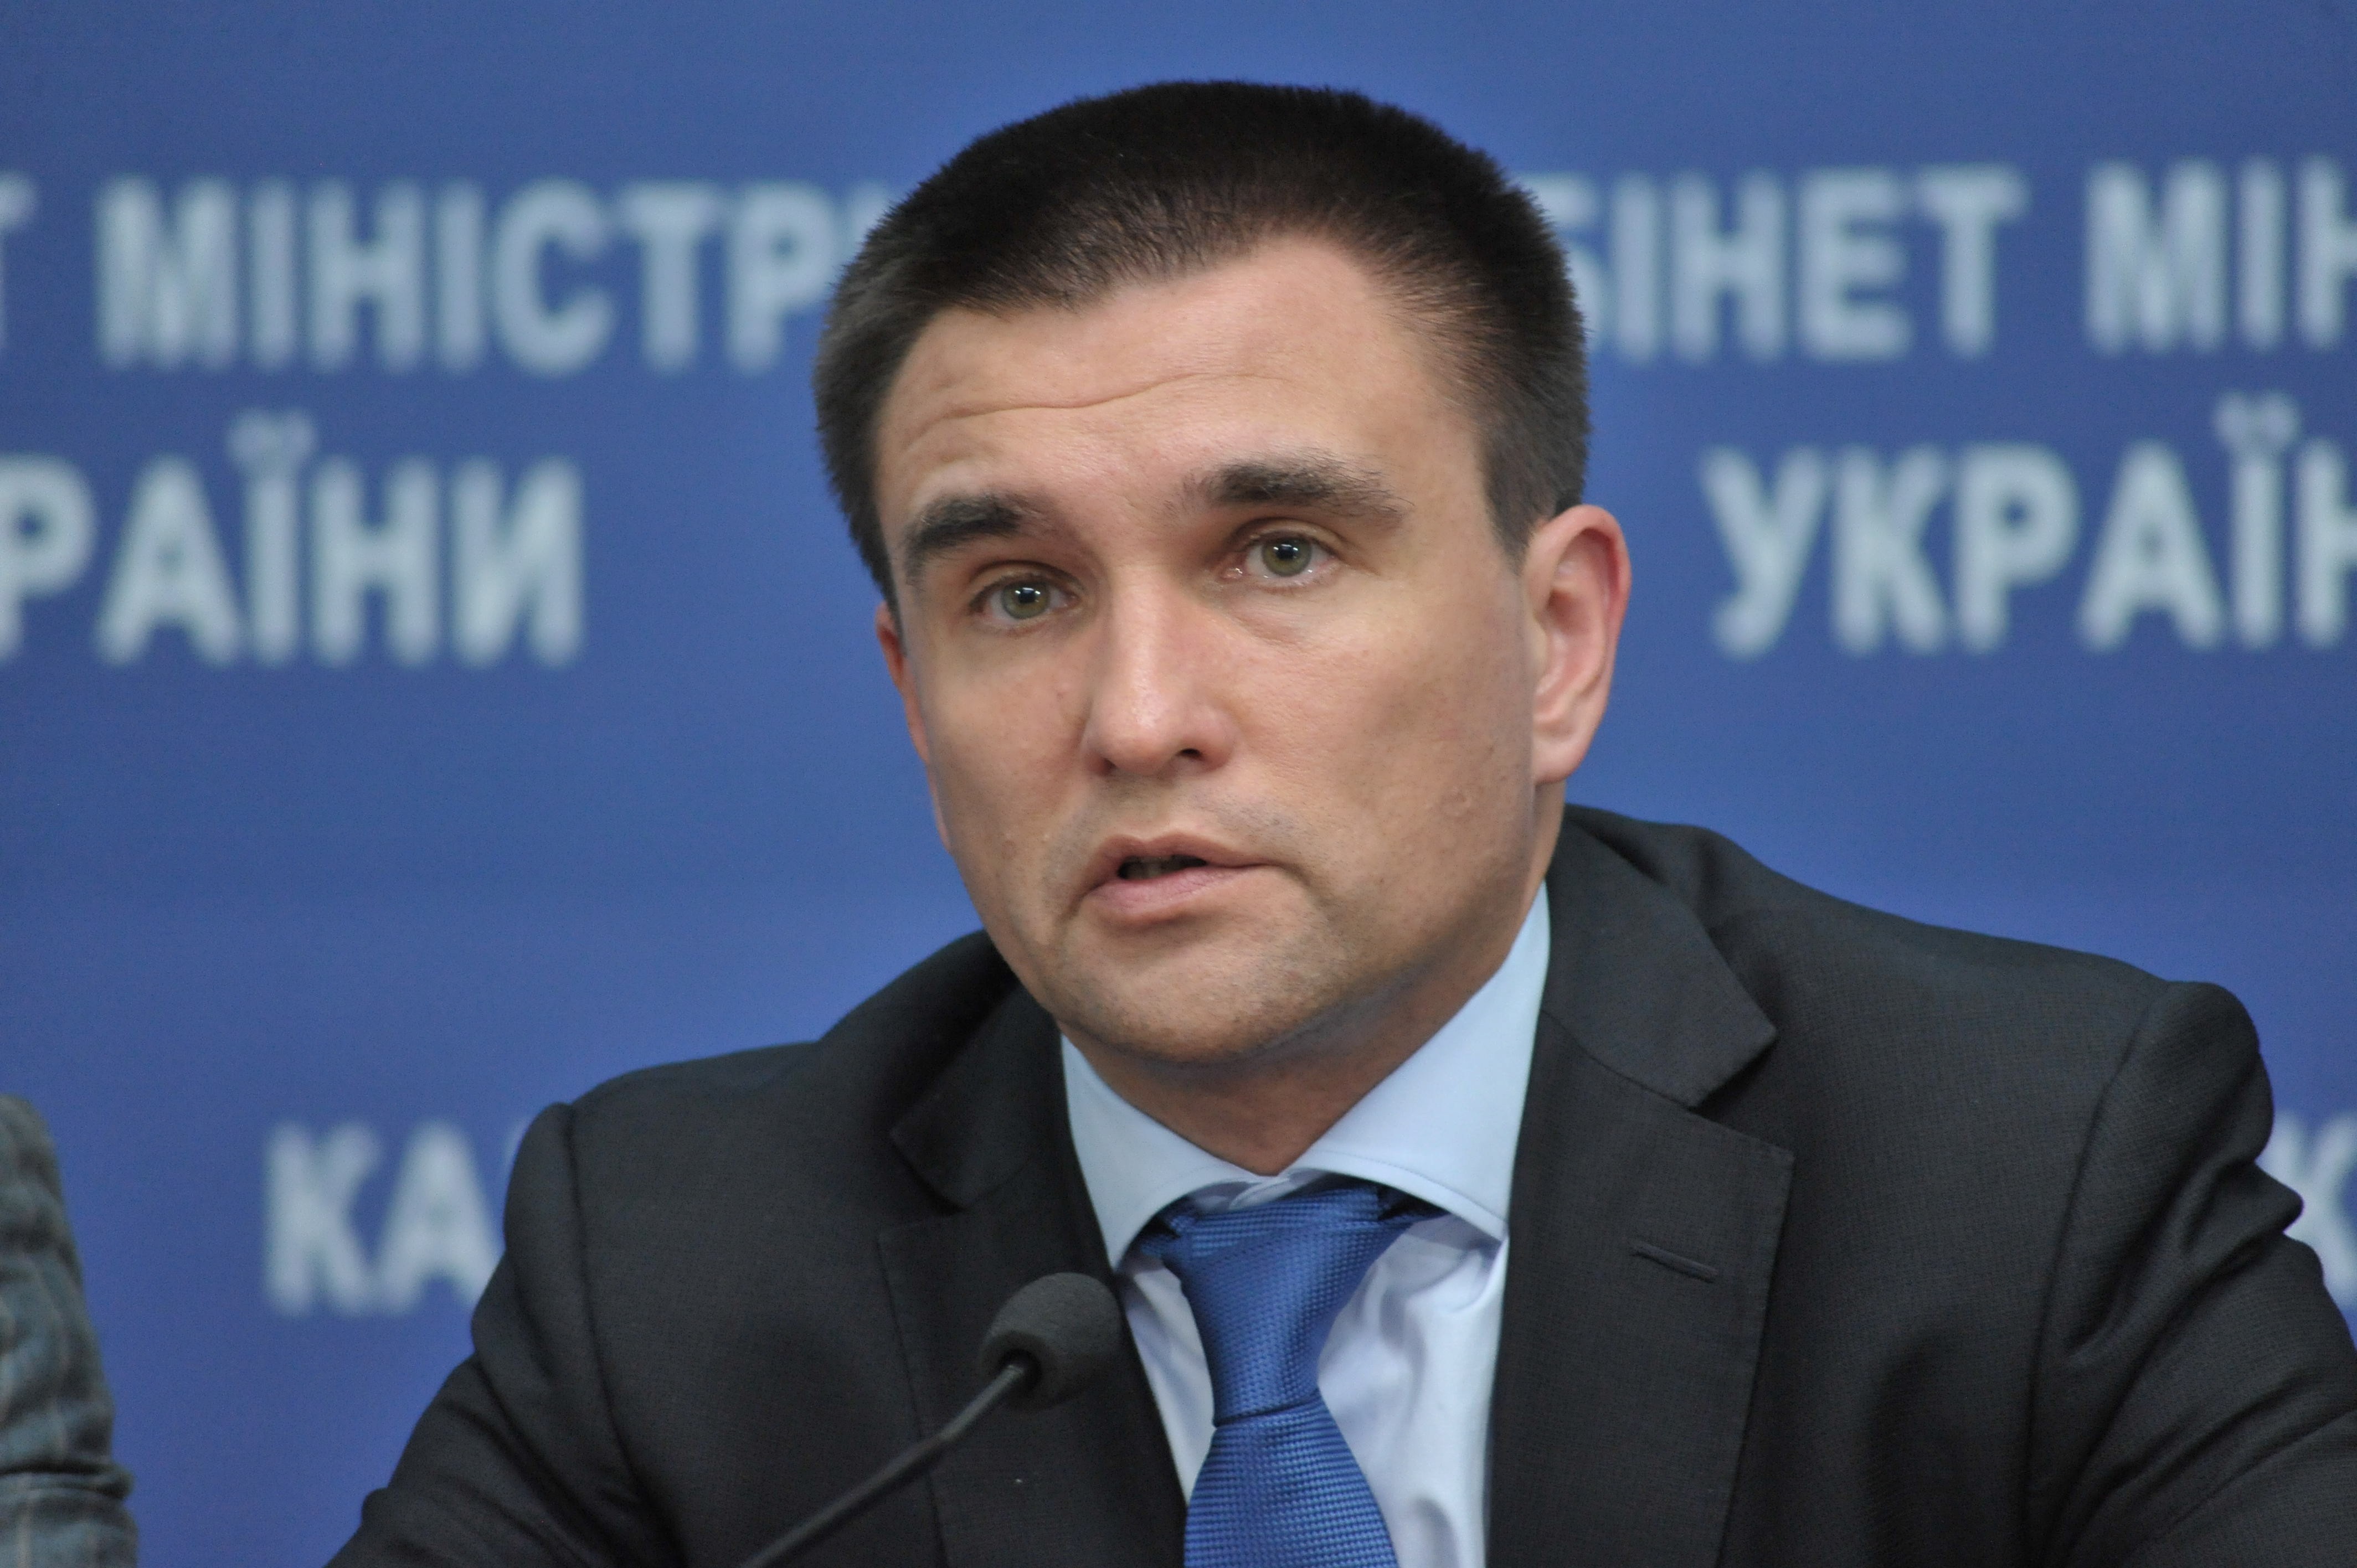 Кремль хочет сохранить свою колонию на Донбассе: глава МИД Украины Климкин сделал неожиданное заявление после разговора с представителем Госдепа США Волкером